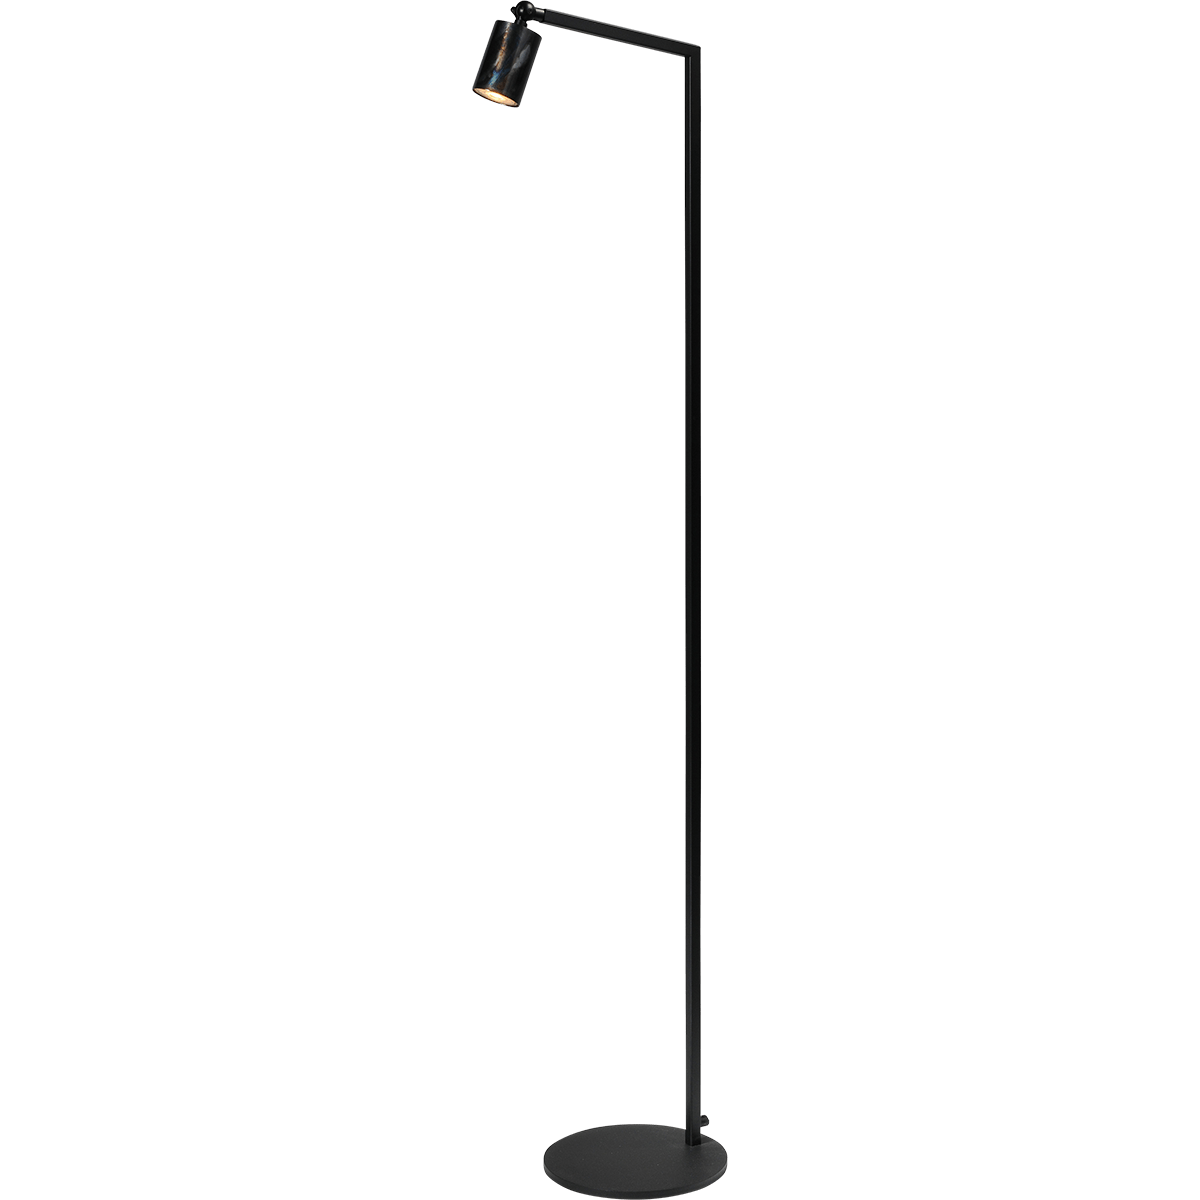 Vloerlamp Bounce 1-lichts - mat zwart/dappled oil - hoogte 135cm - 1x GU10 - MASTERLIGHT - exclusief lichtbron - MASTERLIGHT